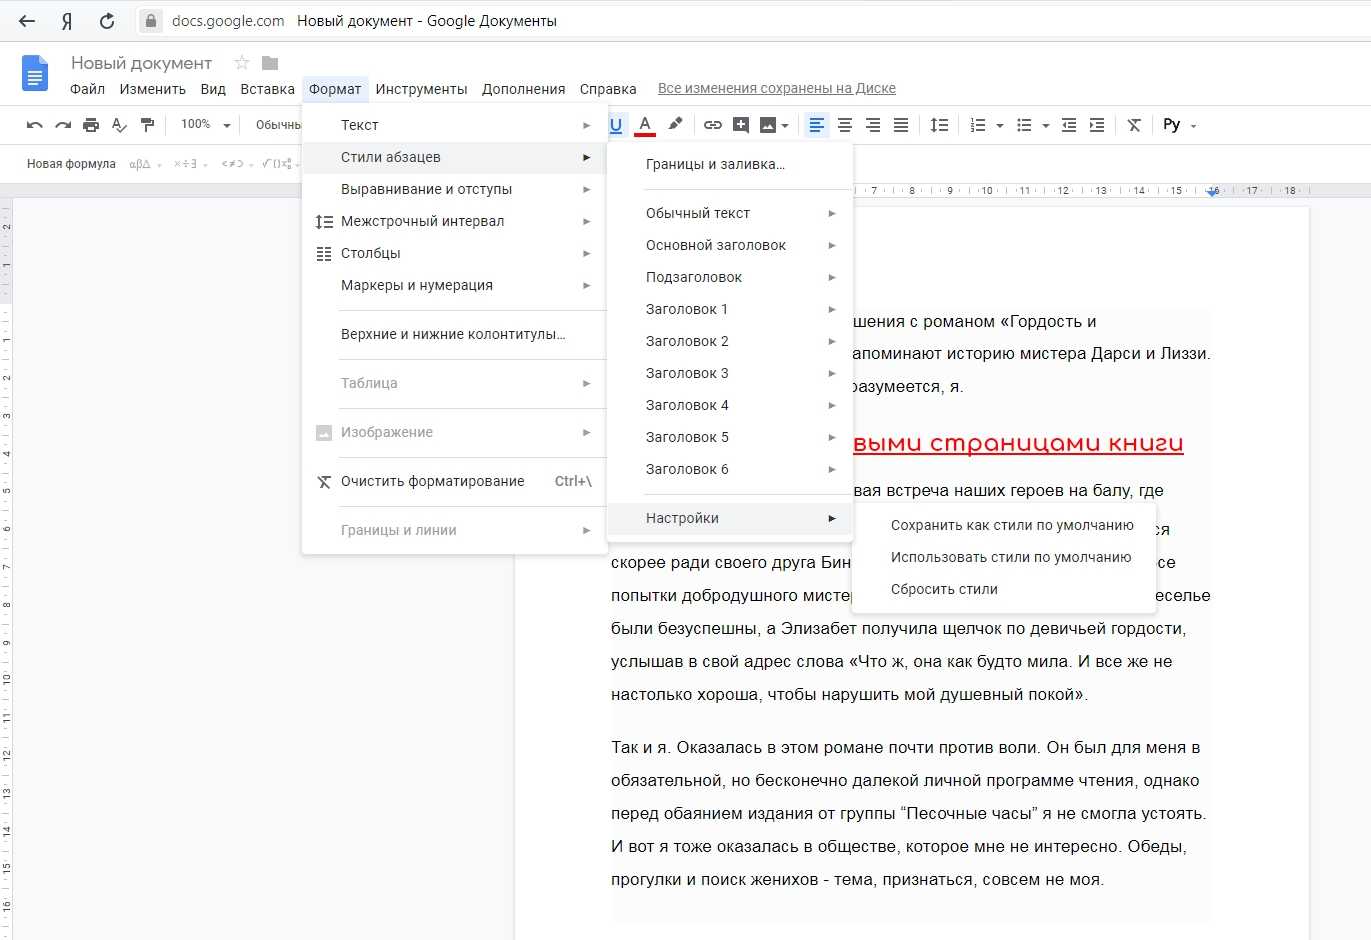 Как работать в google документах? простая инструкция для начинающих